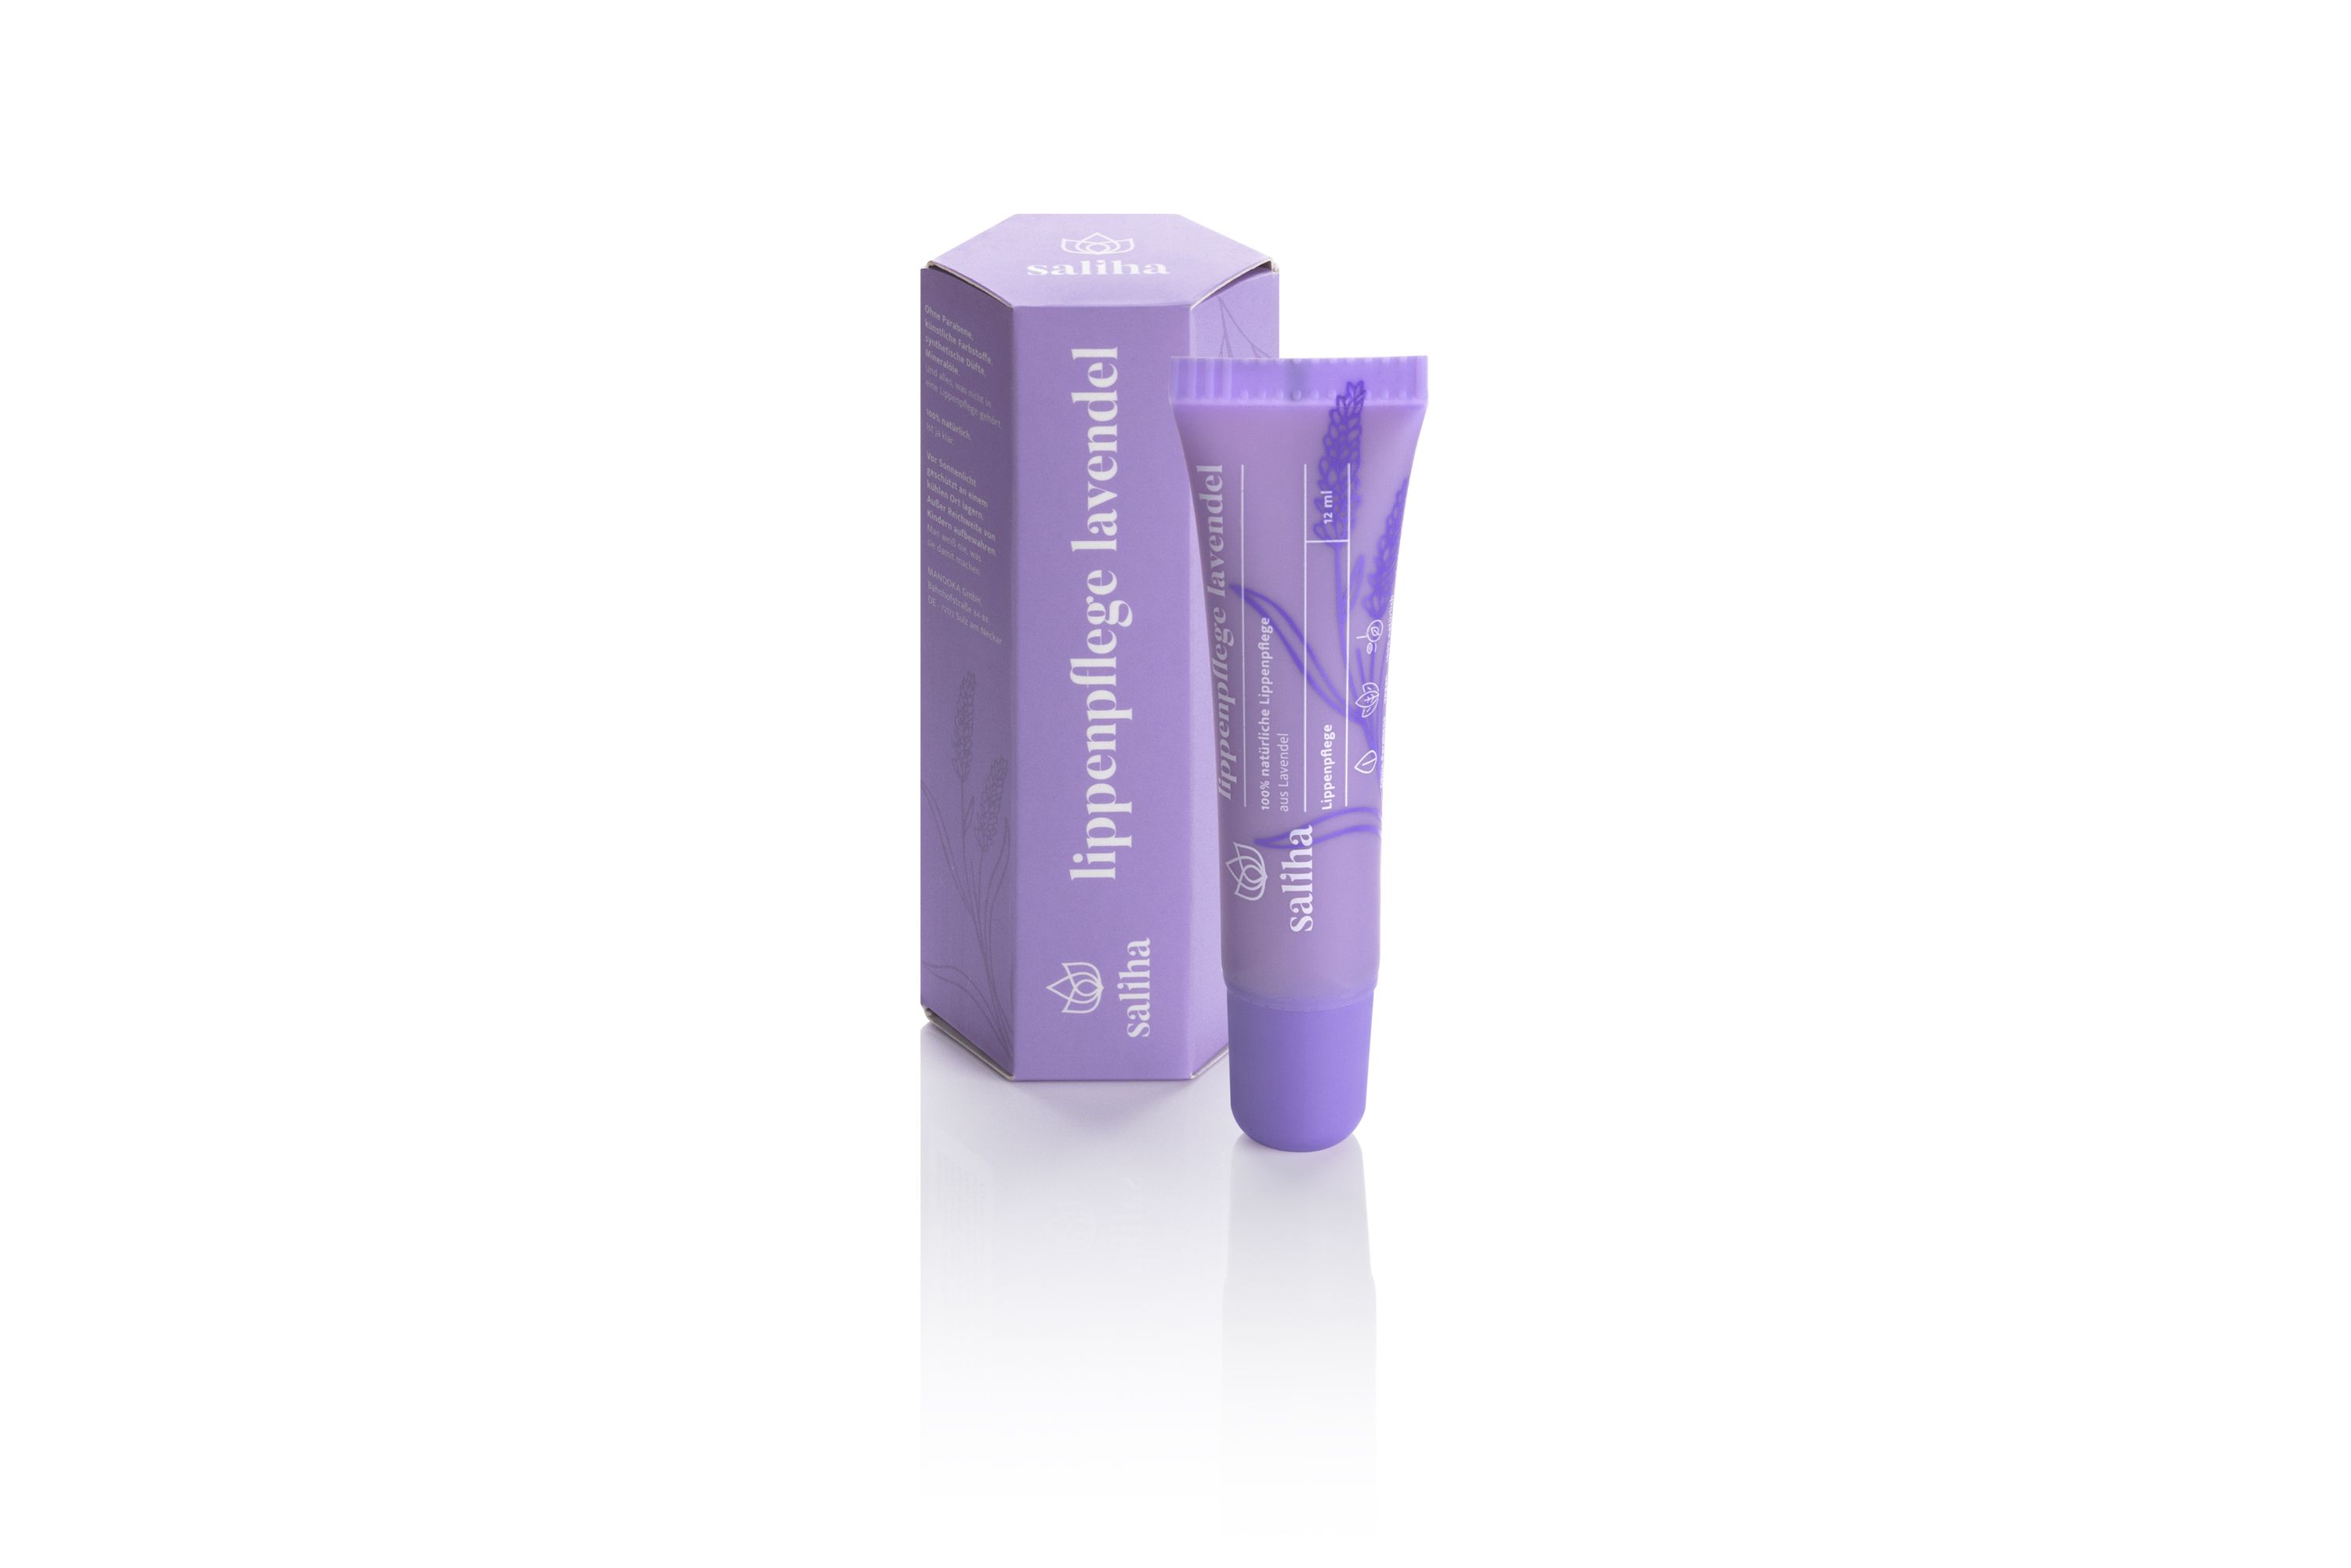 Die Tube und die Verpackung der Lavendel-Lippenpflege